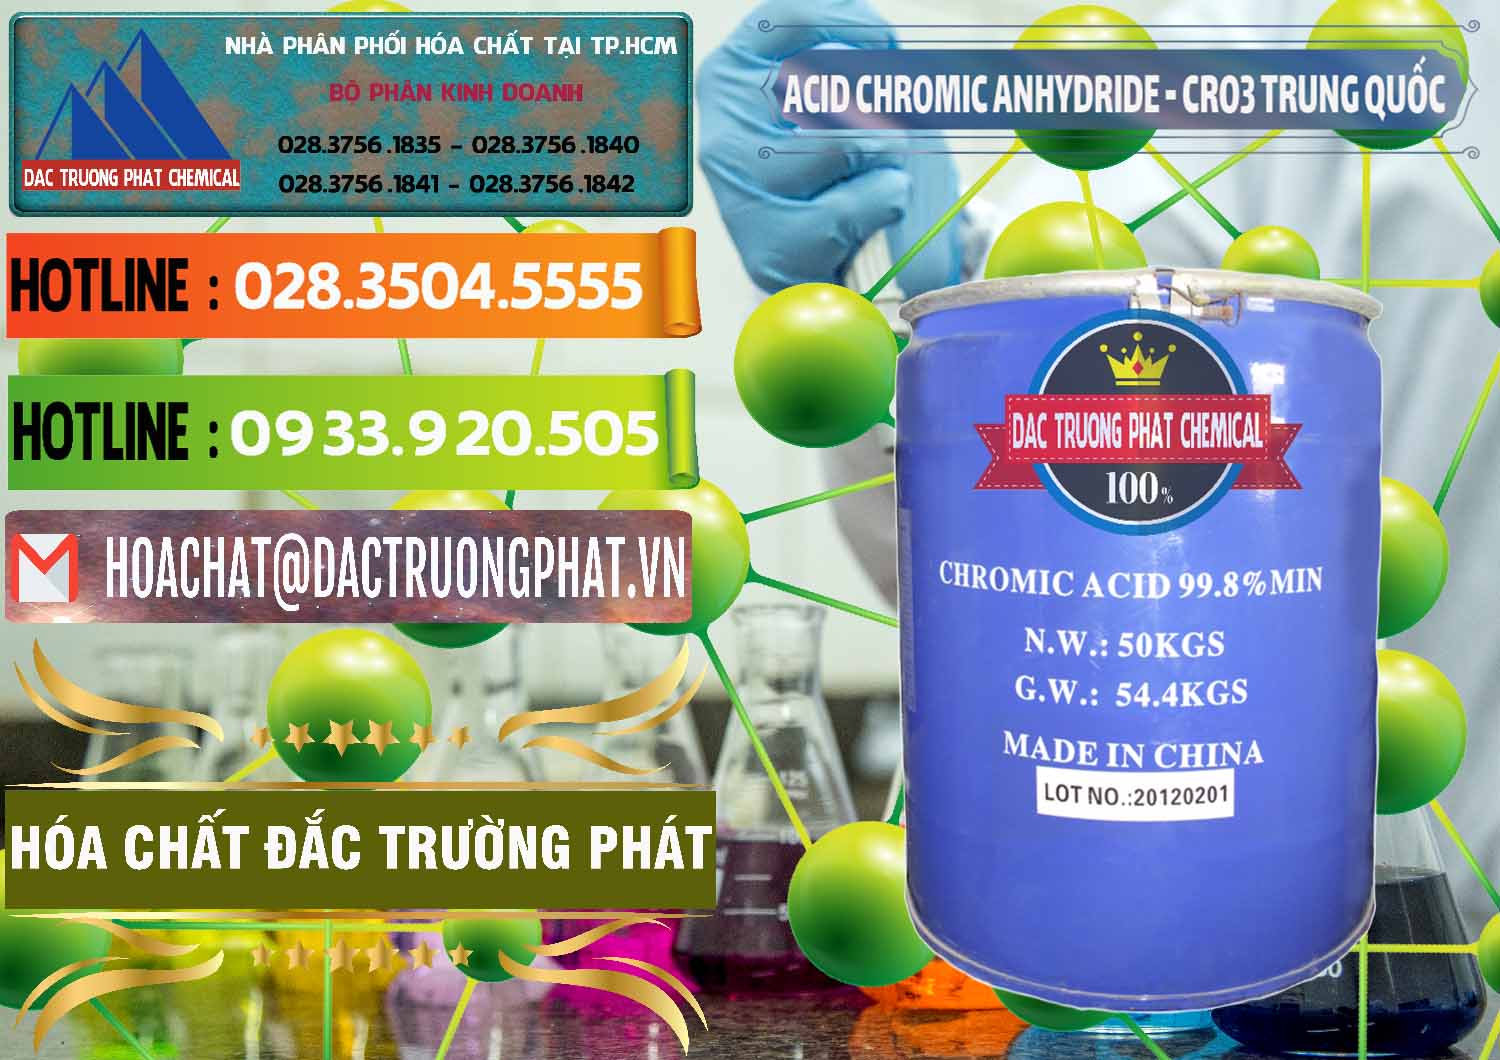 Kinh doanh - bán Acid Chromic Anhydride - Cromic CRO3 Trung Quốc China - 0007 - Nơi chuyên kinh doanh - cung cấp hóa chất tại TP.HCM - cungcaphoachat.com.vn